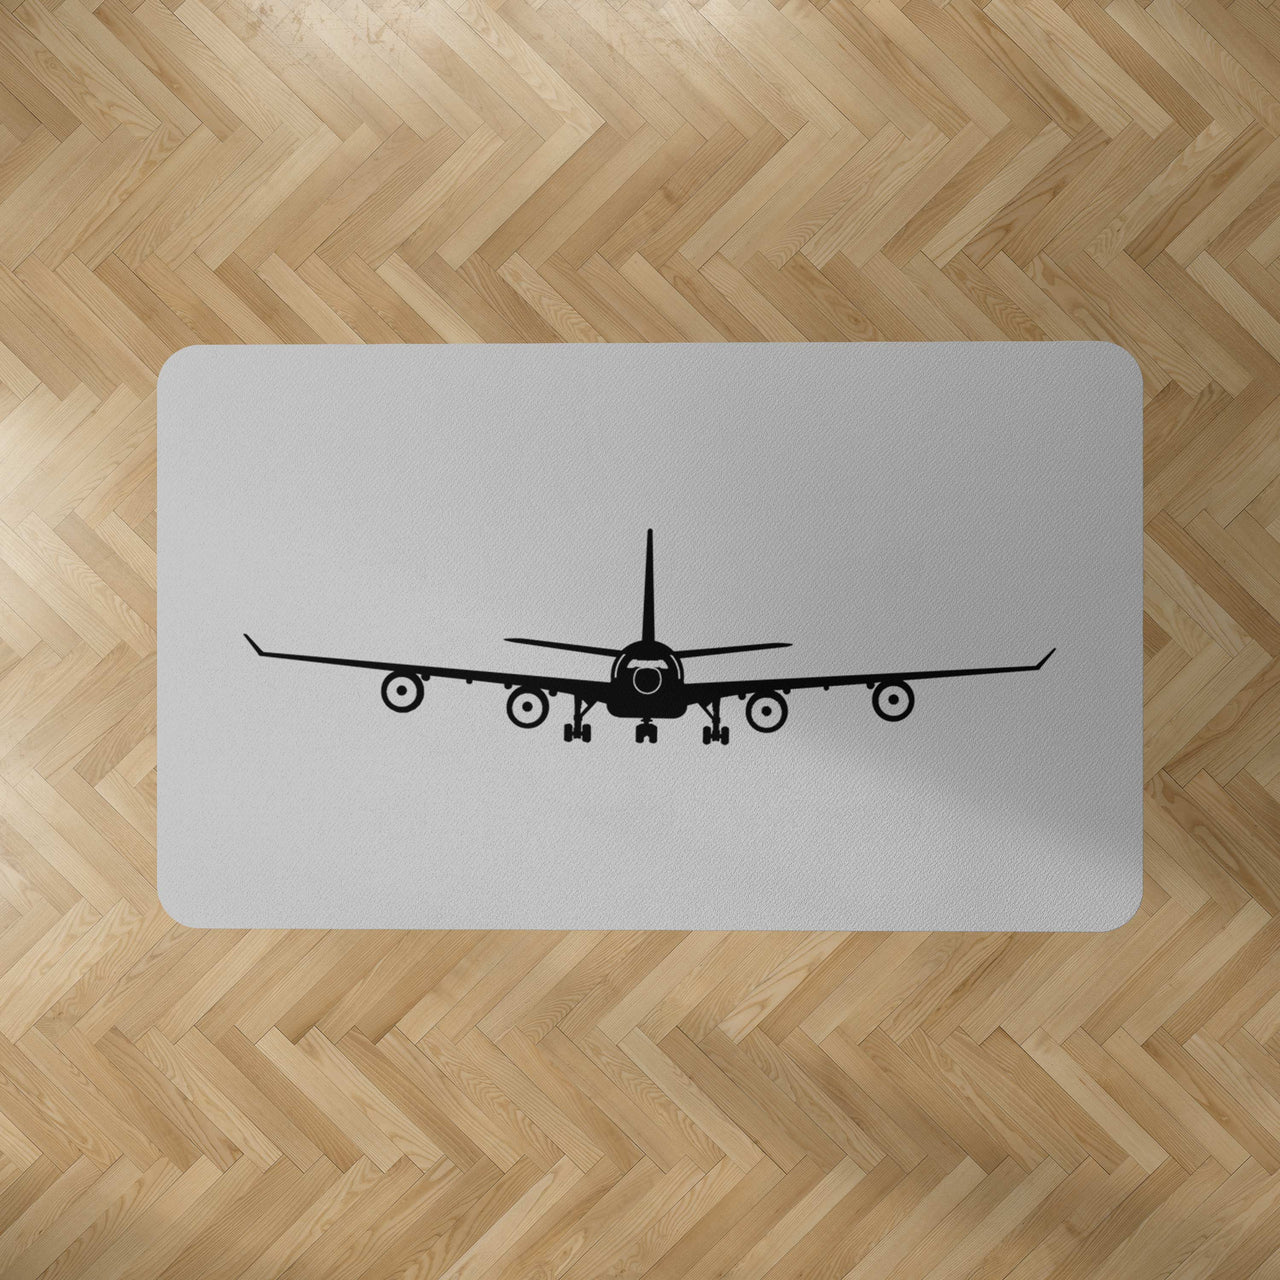 Airbus A340 Silhouette Designed Carpet & Floor Mats